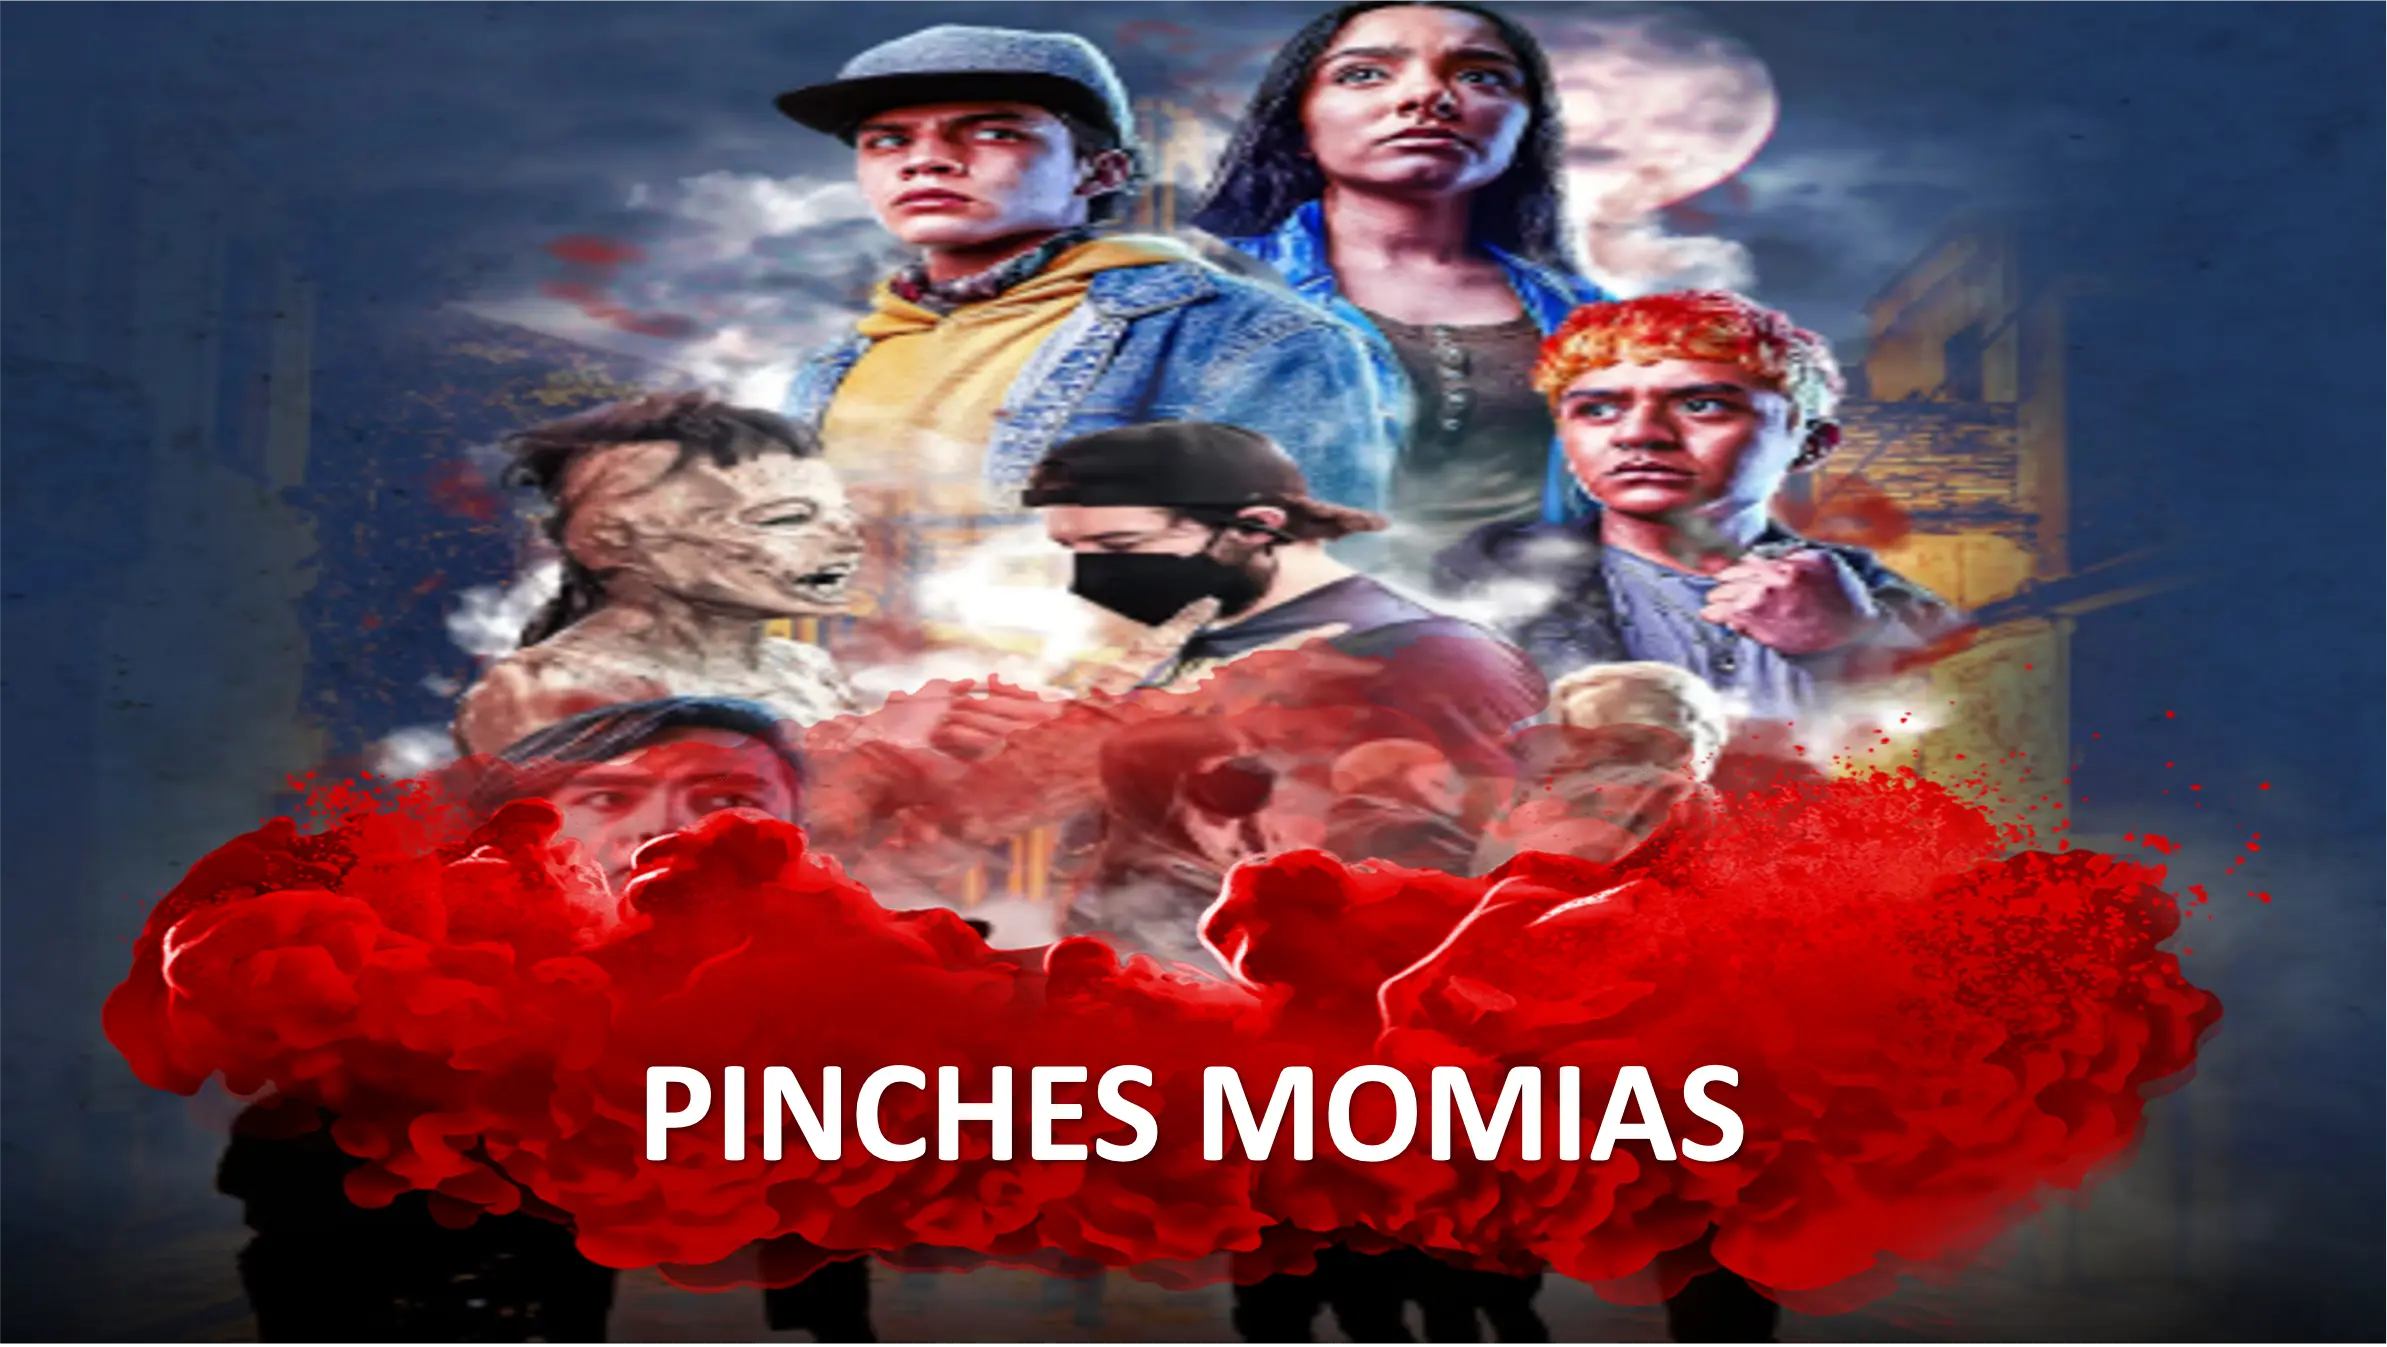 Ver los capítulos completos de esta hermosa telenovela Pinches Momias